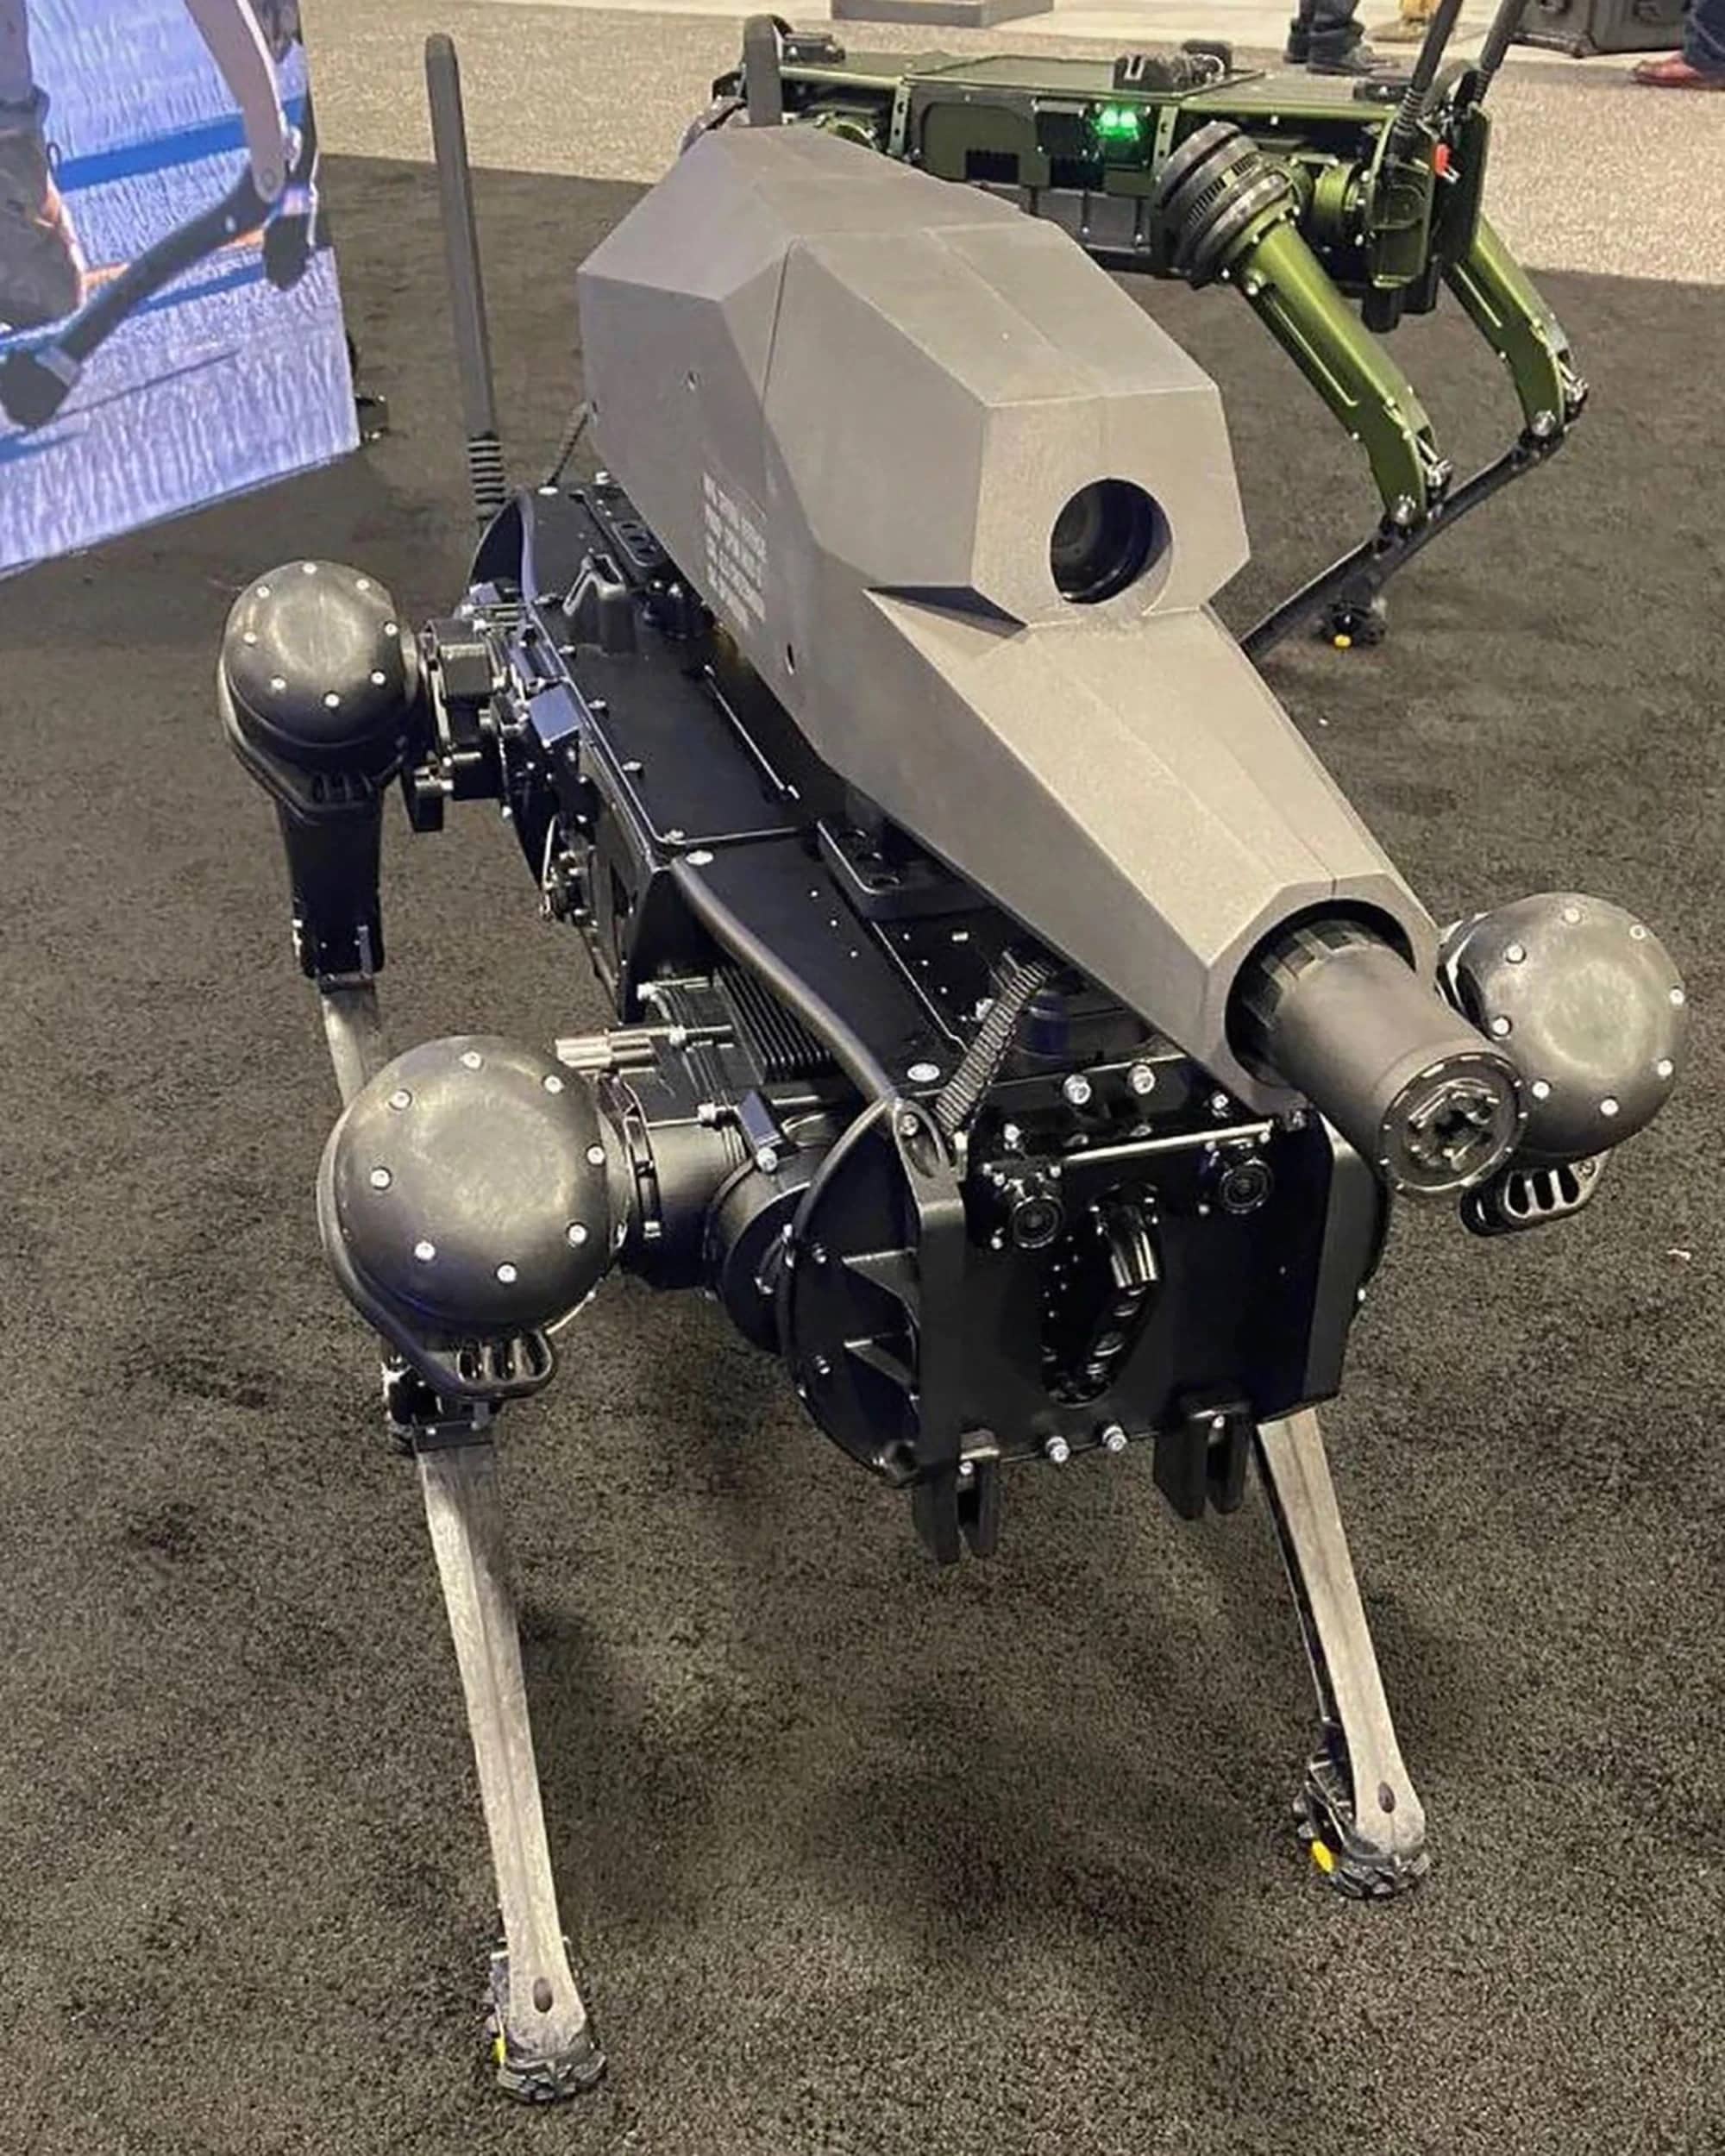 Американская компания Ghost Robotics выпустила робота-собаку, вооруженного снайперской винтовкой. Ghost Robotics